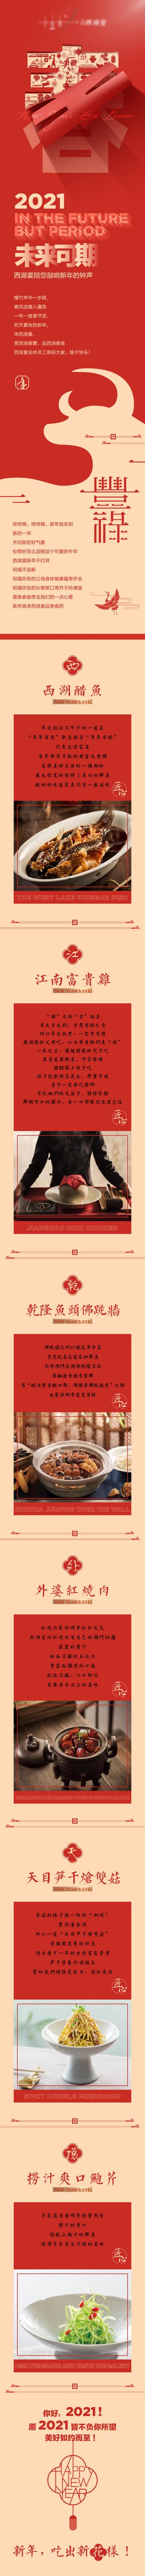 南门网 专题设计 长图 春节 年夜饭  酒店 家宴  